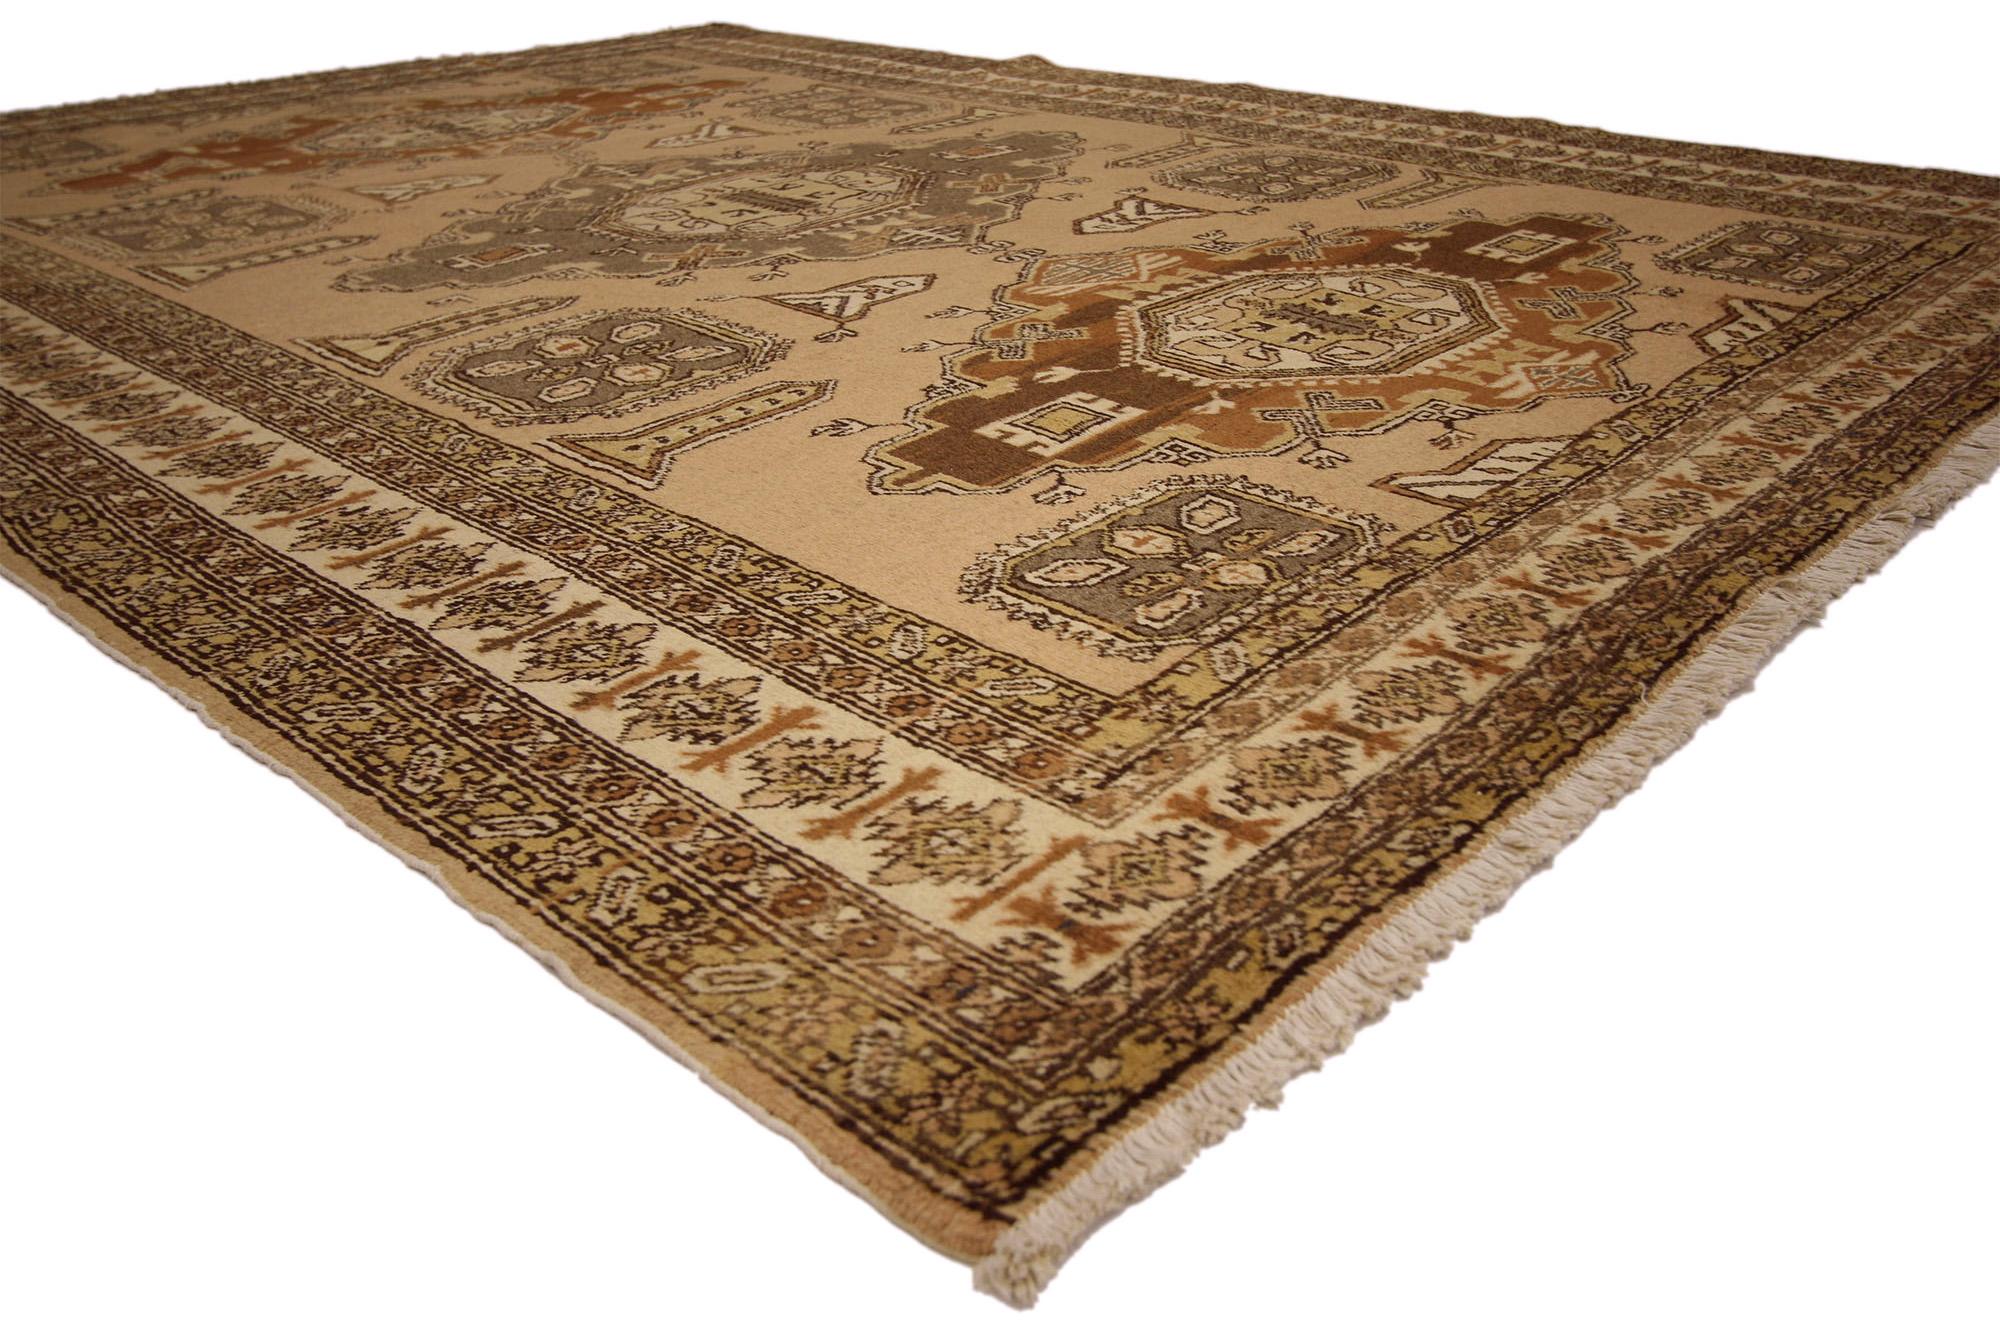 72037 Vintage Brown Persian Ardabil Rug, 07'00 x 10'00. Les tapis persans Ardabil lavés à l'ancienne, originaires de la ville d'Ardabil en Iran, sont des tapis modernes qui ont subi un processus de lavage spécial pour adoucir les couleurs tout en